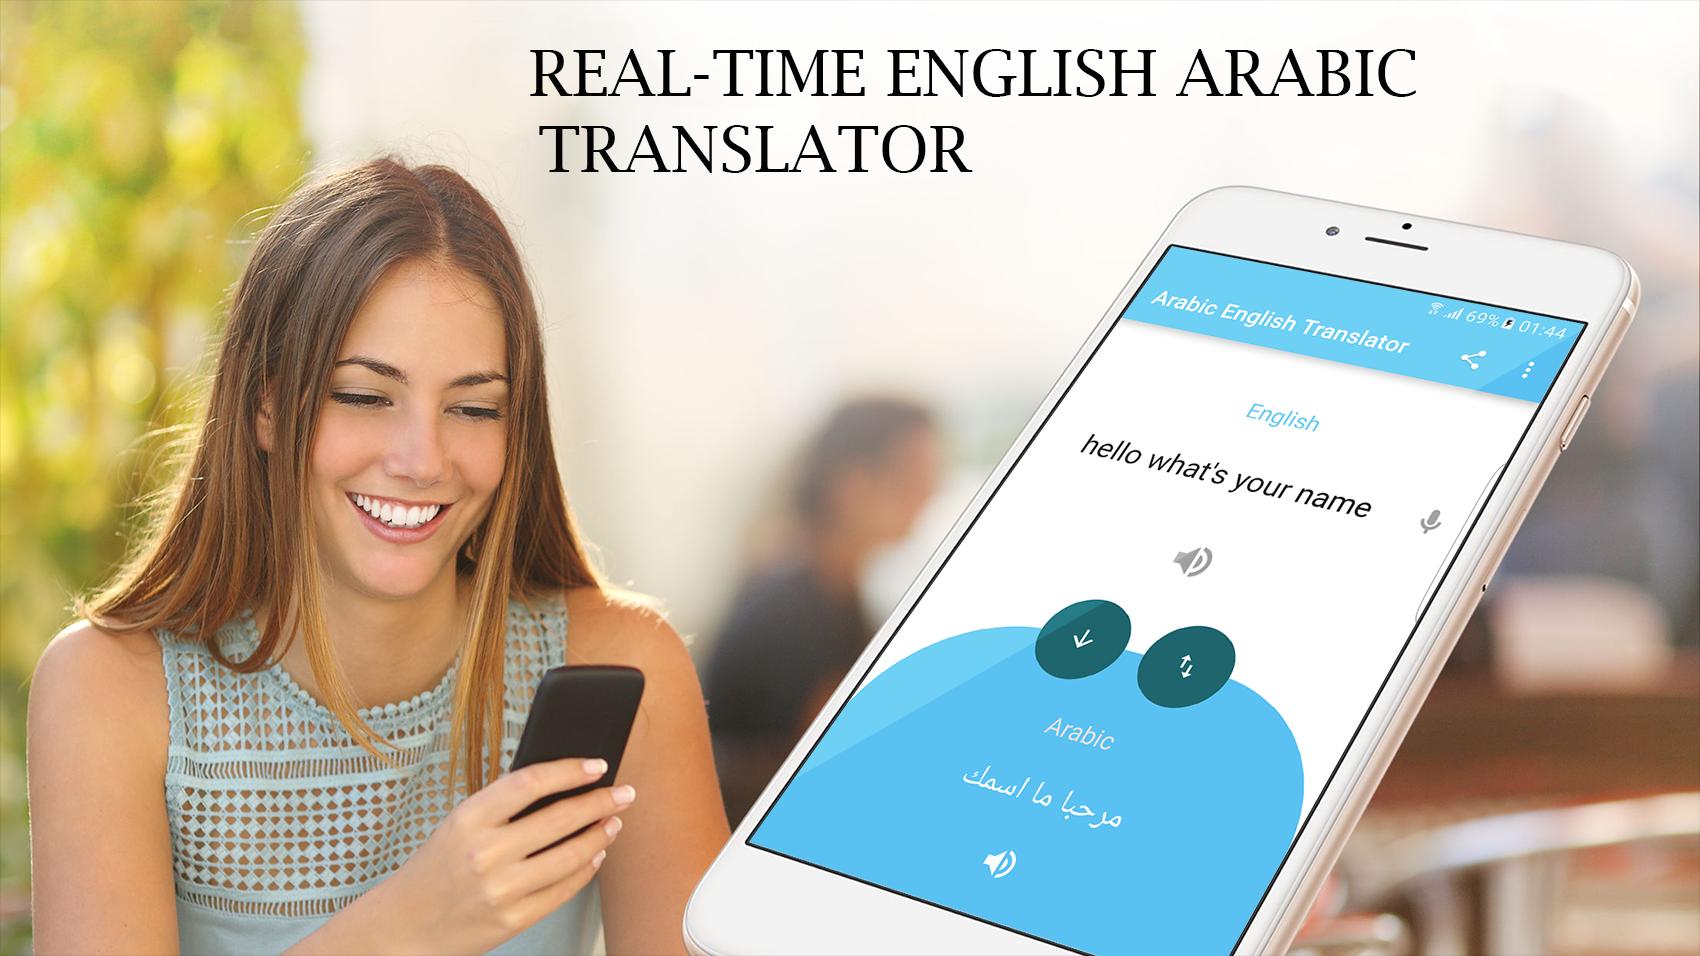 مترجم عربي انجليزي سريع - قاموس عربي انجليزي مجاني for Android - APK  Download